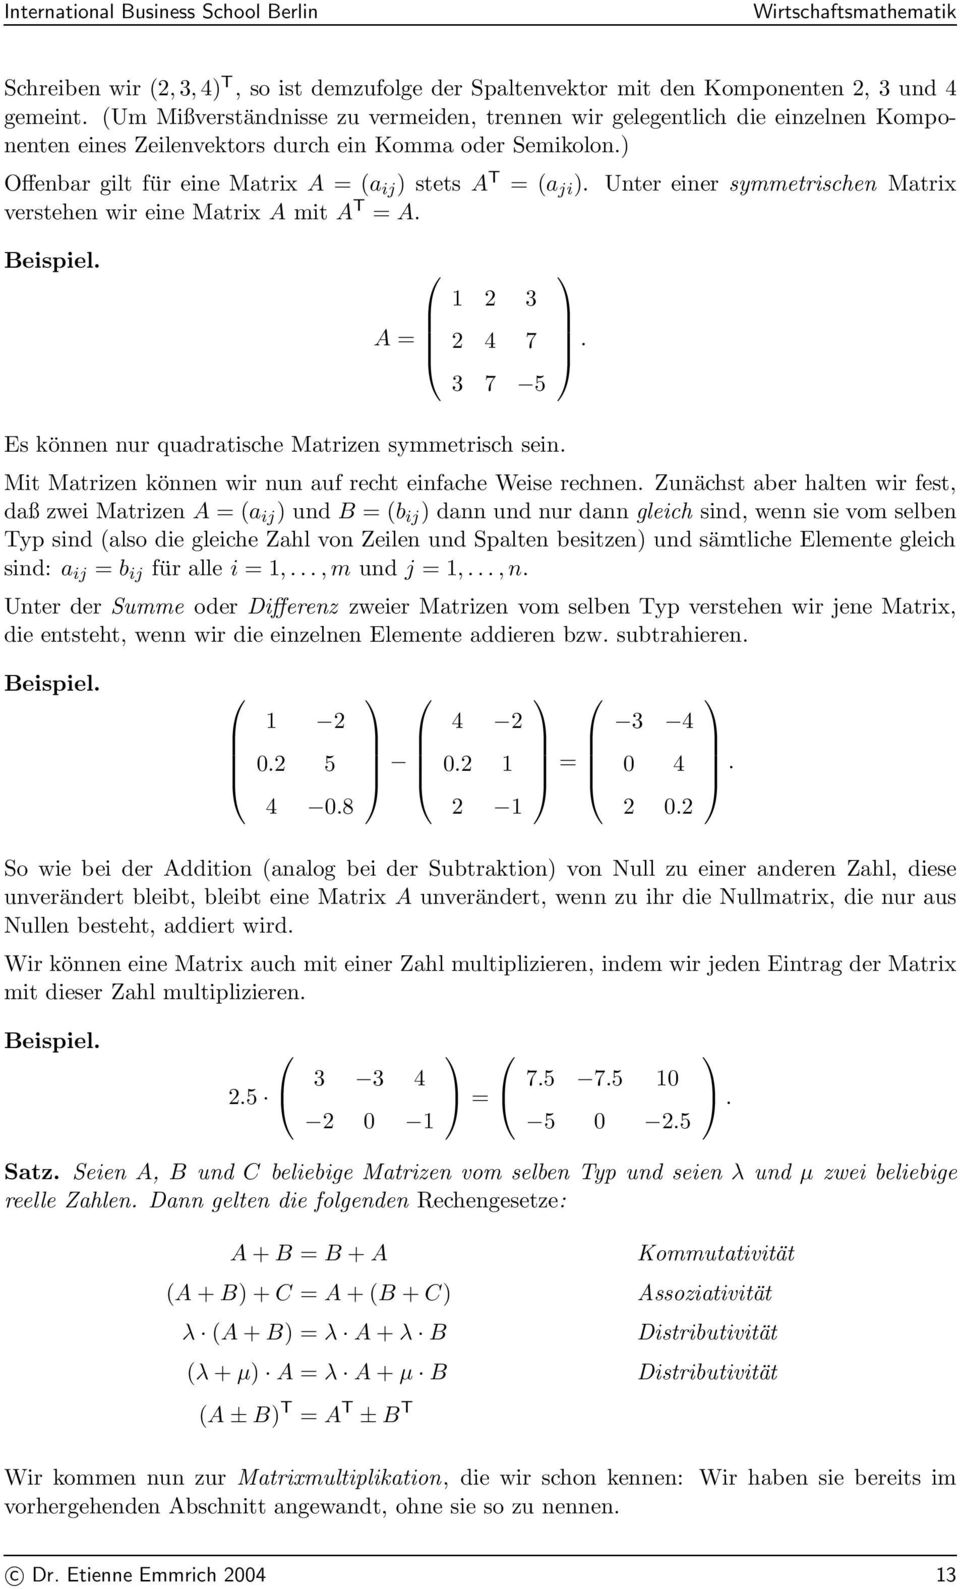 2 4 7 3 7 5 Es können nur quadratische Matrizen symmetrisch sein Mit Matrizen können wir nun auf recht einfache Weise rechnen Zunächst aber halten wir fest, daß zwei Matrizen A = (a ij ) und B = (b